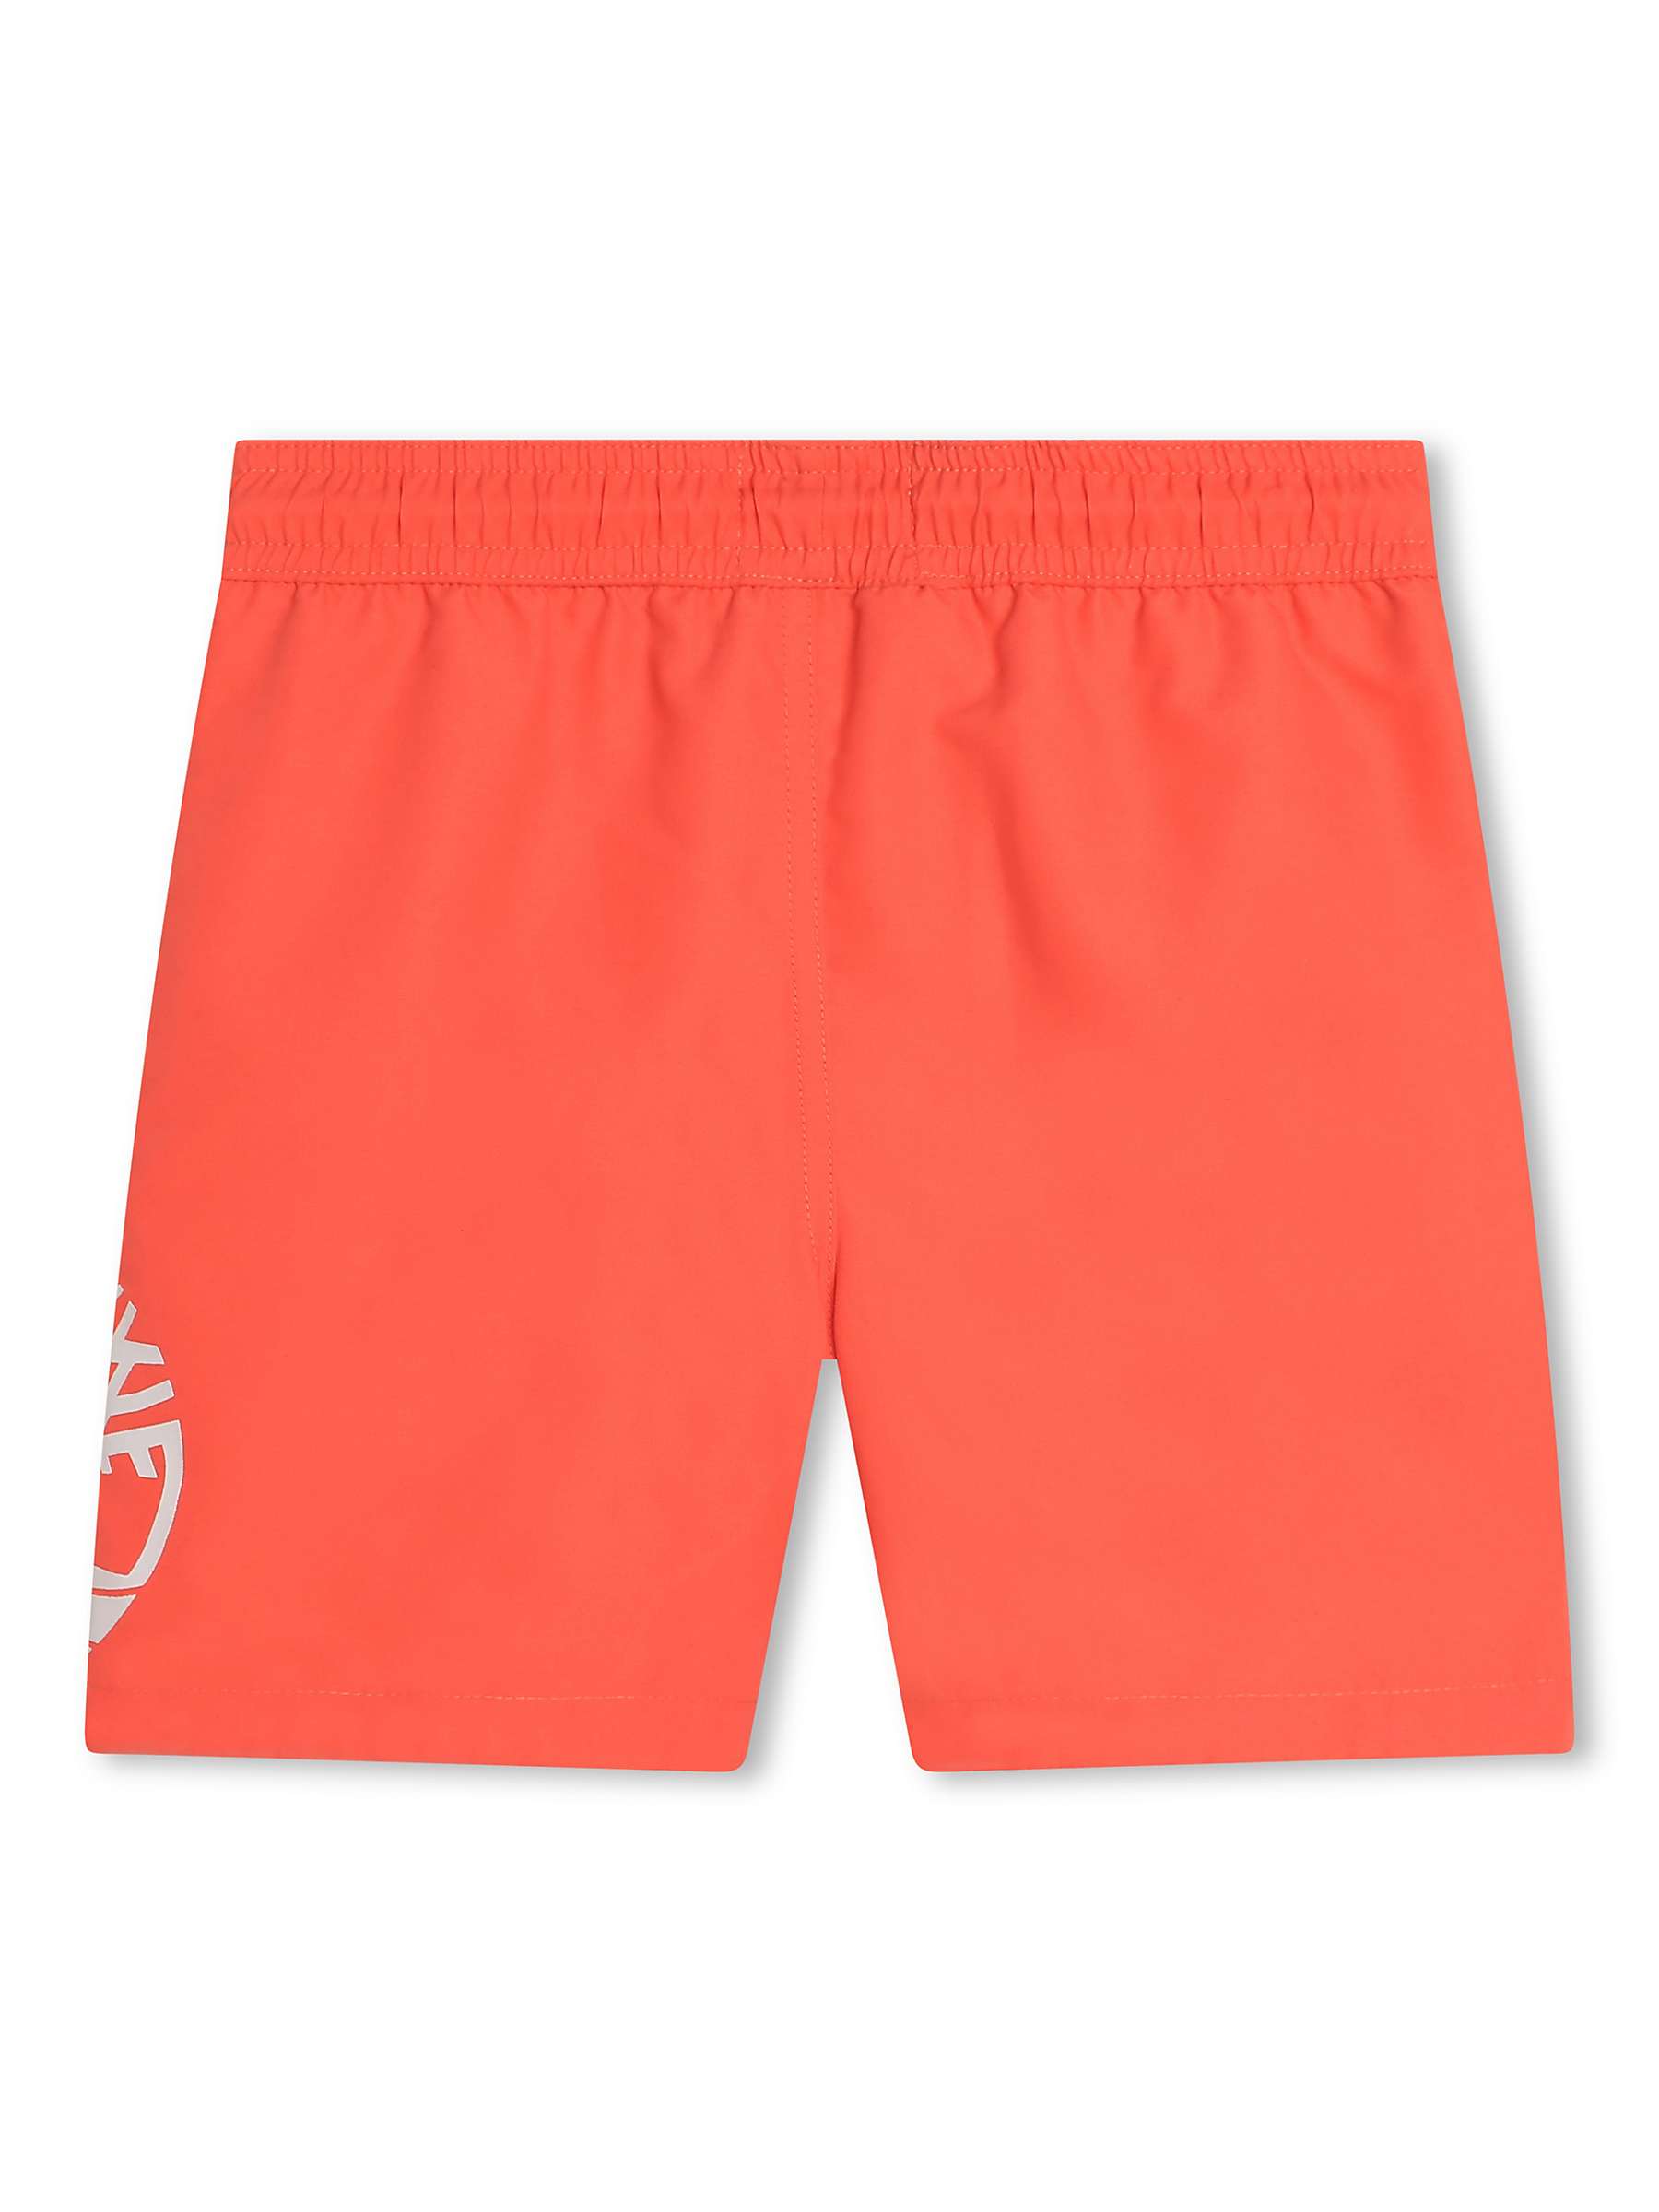 Buy Timberland Kids' Logo Block Swim Shorts, Orange Online at johnlewis.com